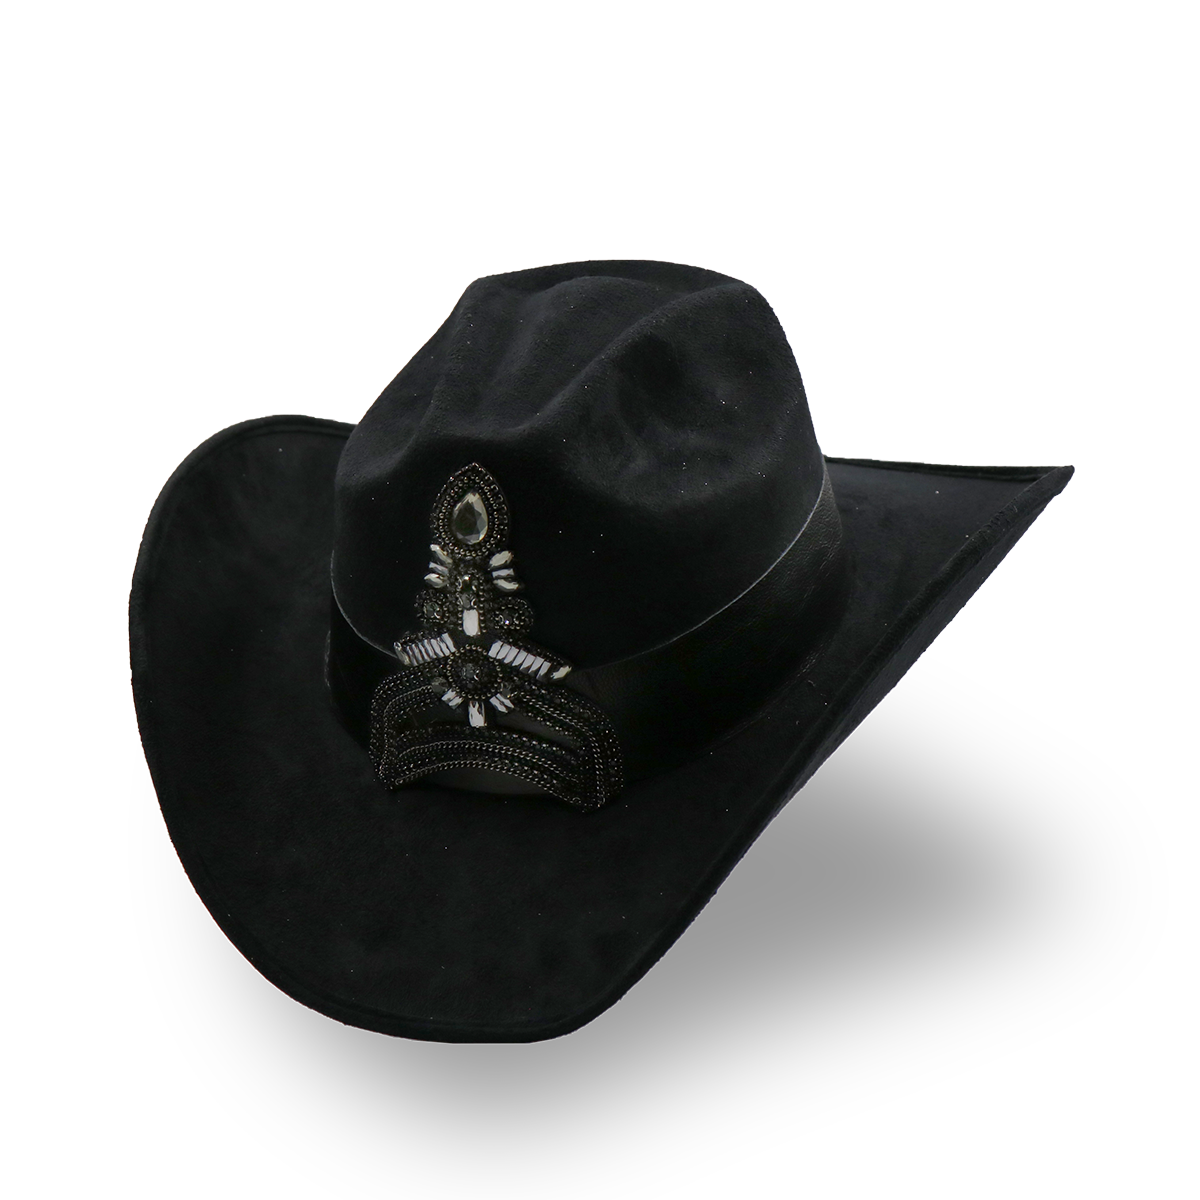 Sombrero Gamuza con Diseño Exclusivo Negro - Formal -Cowboy